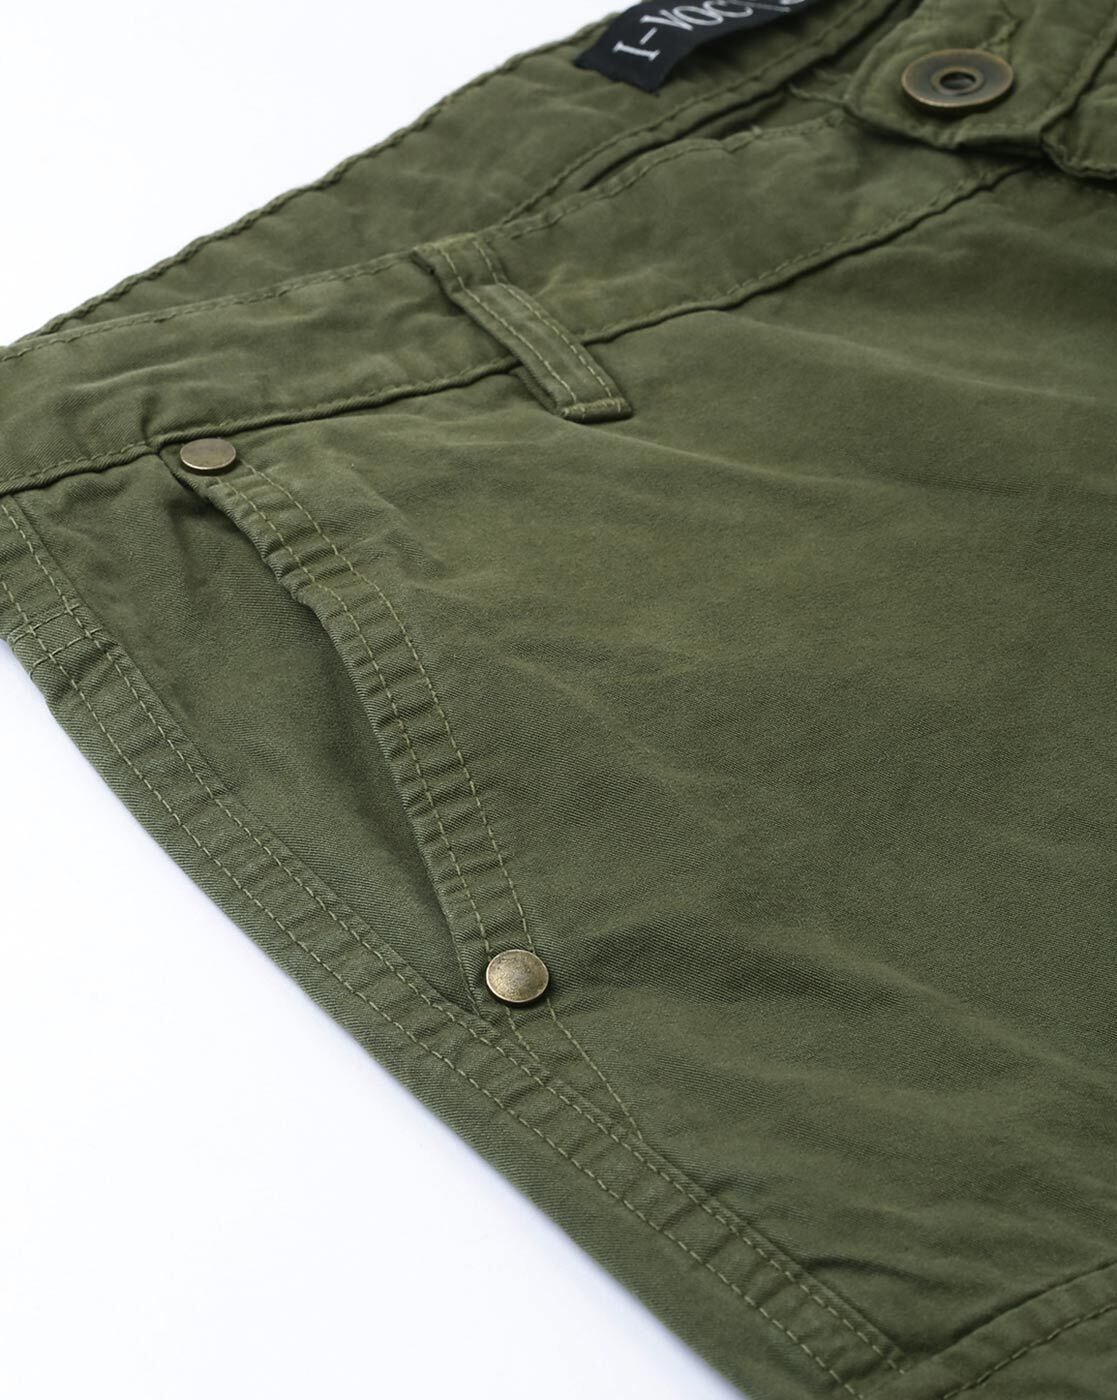 Olive Green Cargo Pants Mens | vlr.eng.br